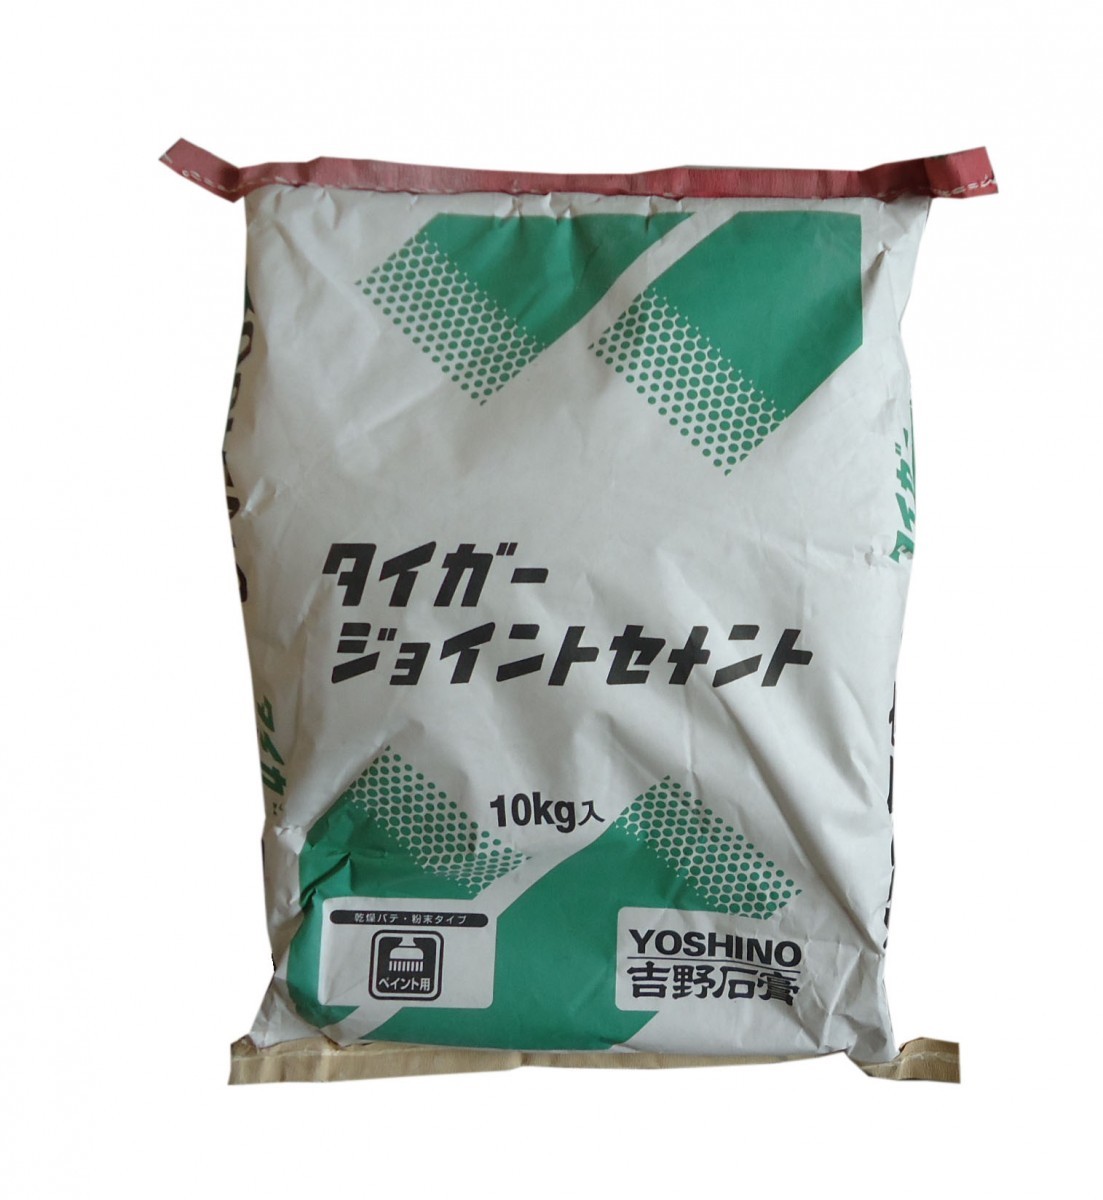  Yoshino камень . Tiger joint цемент 10kg [ бесплатная доставка * Hokkaido, Okinawa, за исключением отдаленных островов ]